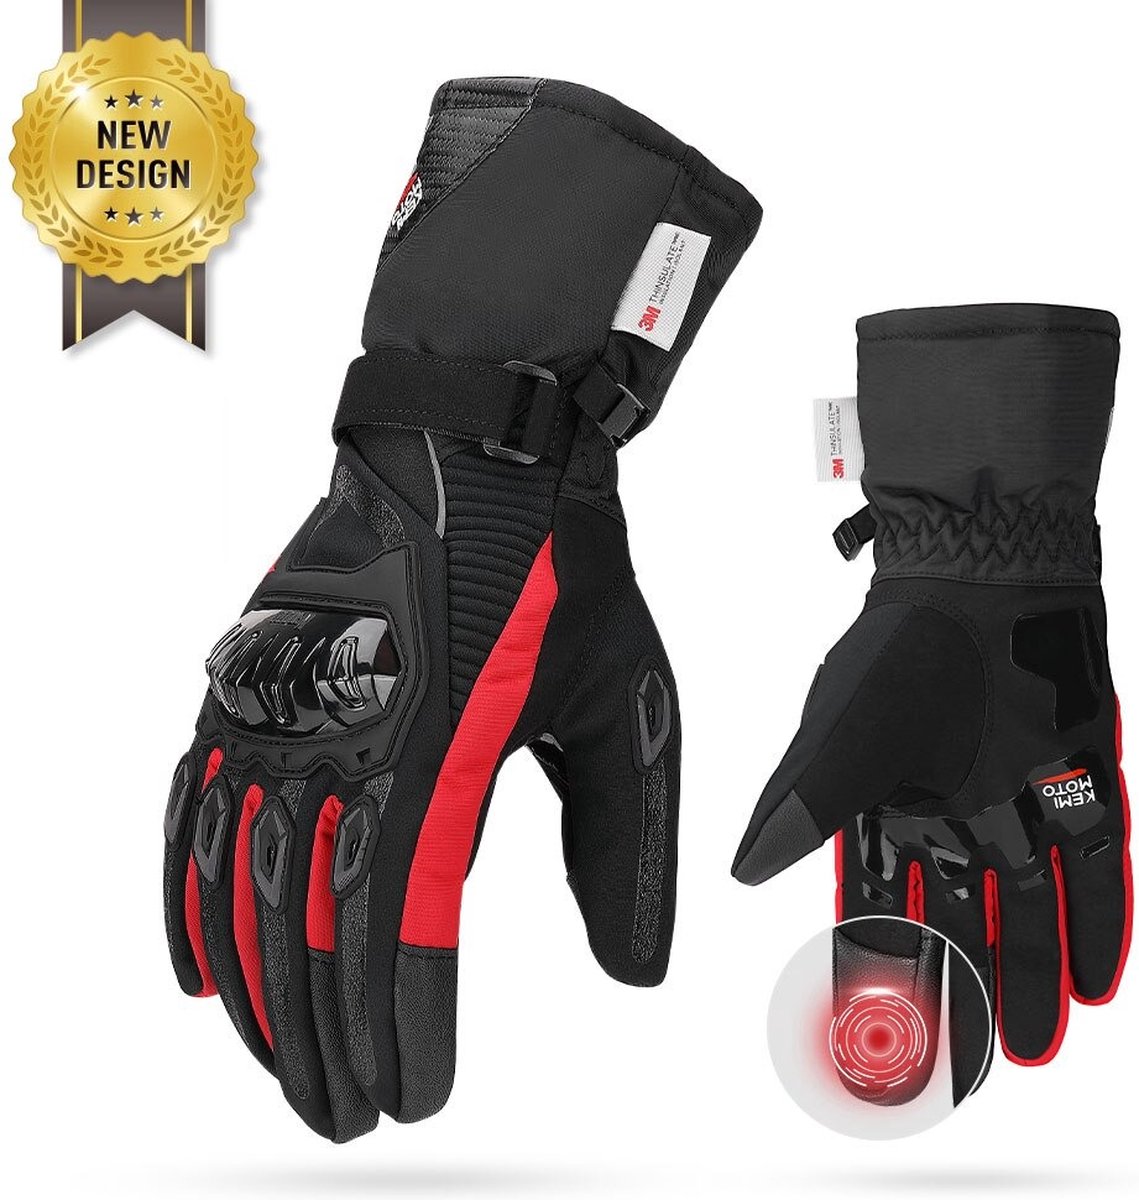 KEMiMOTO® Motorfiets Handschoenen -Waterdichte Handschoenen - Beschermende Handschoenen Voor Mannen - Comfortabel - Kwaliteit - Stevig